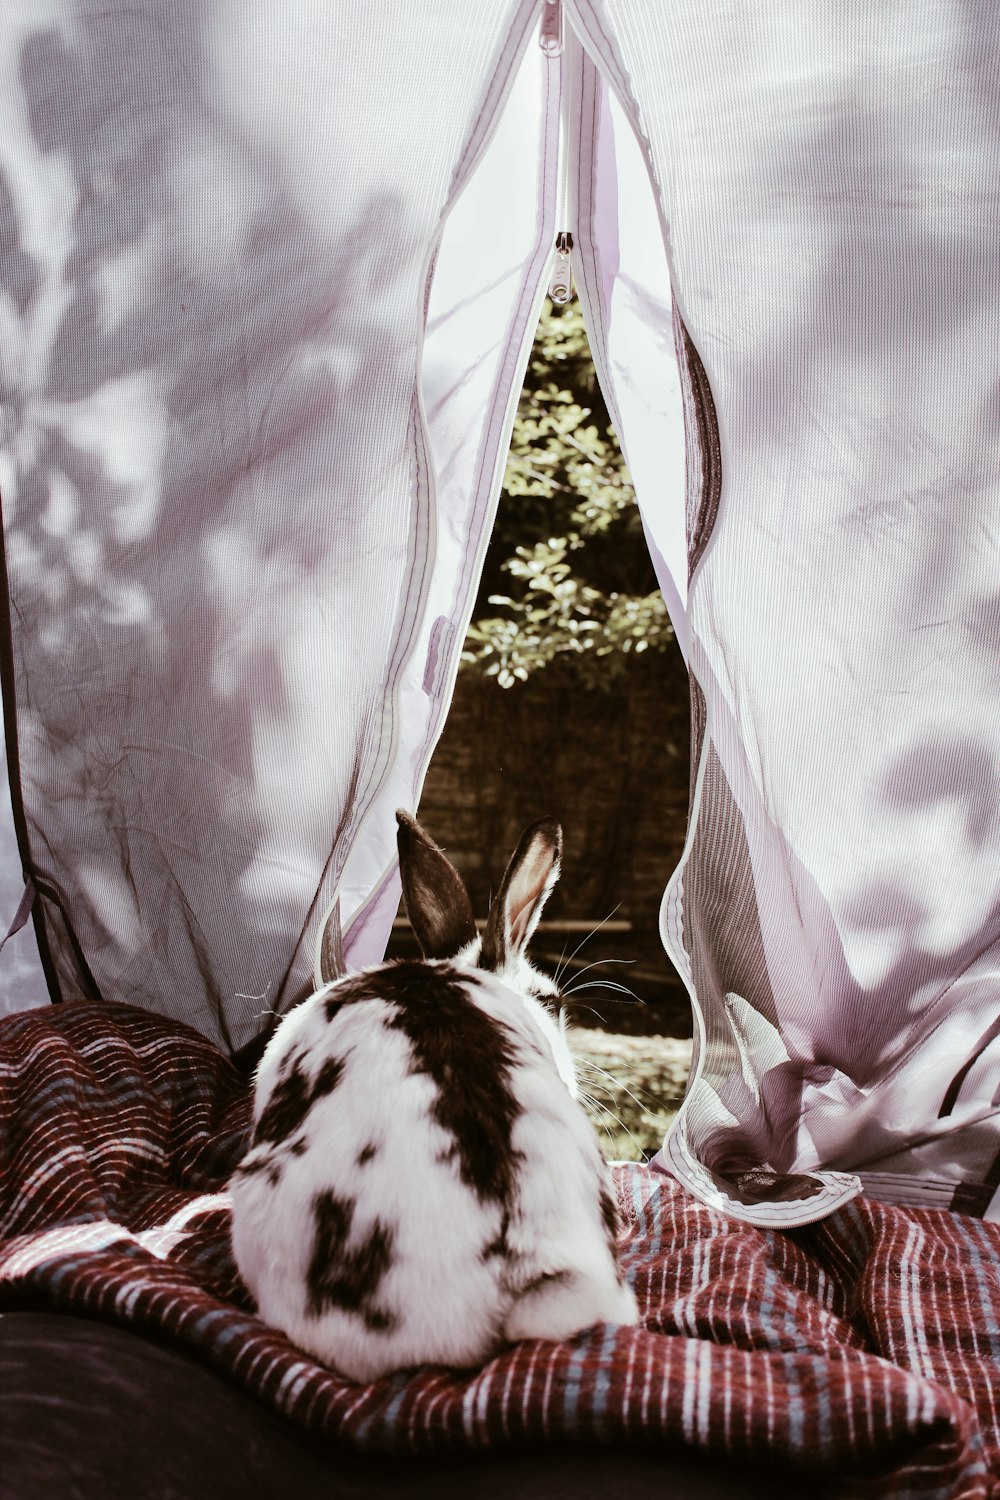 갈색 줄무늬 직물에 흰색과 갈색 토끼